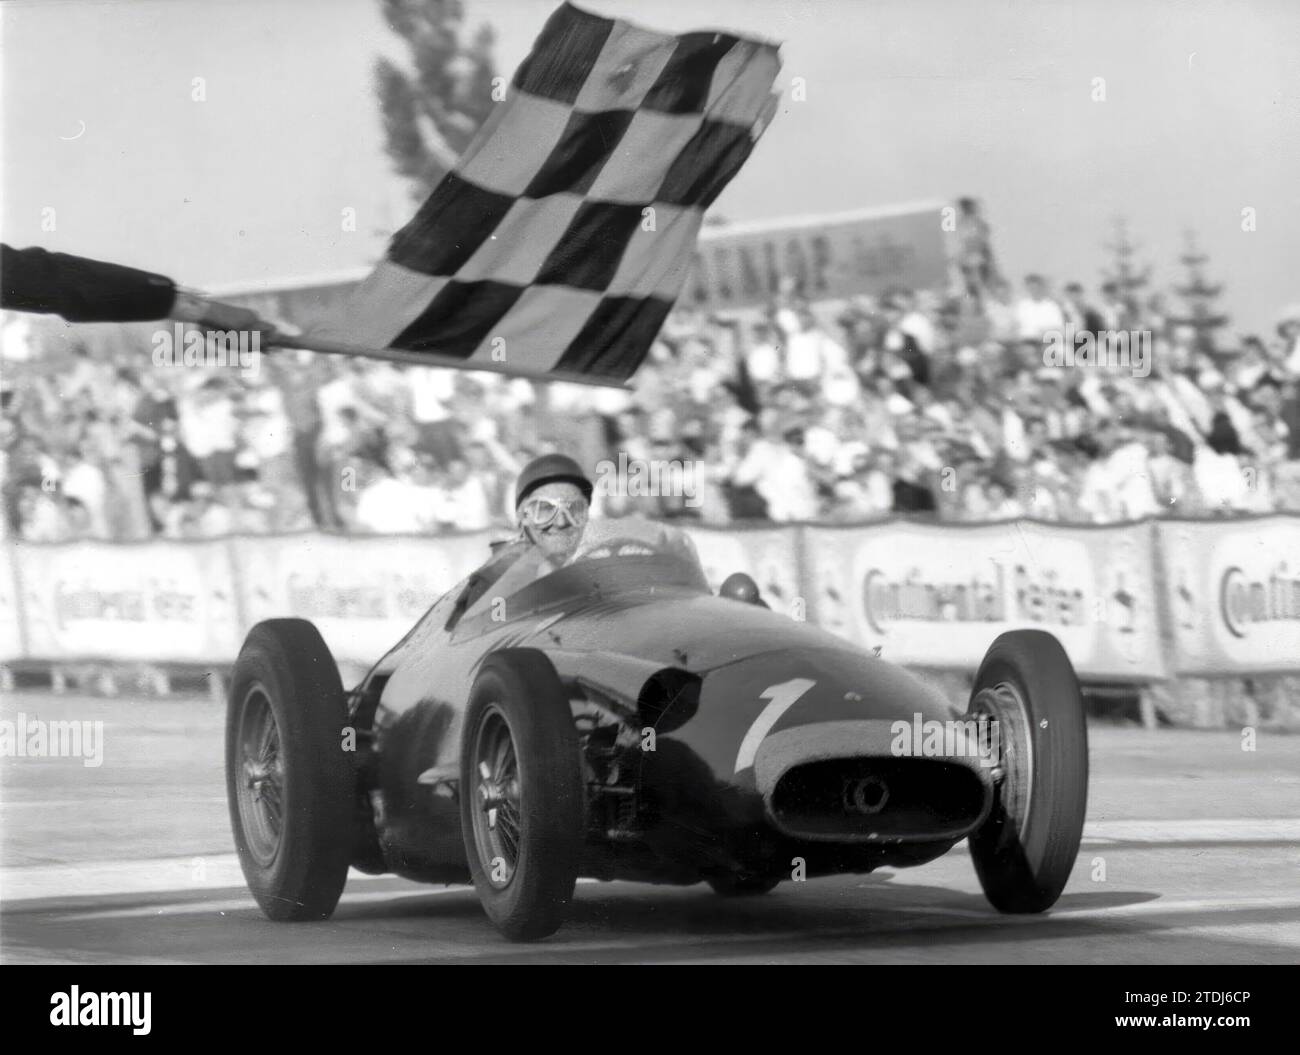 Germania, 08/04/1957. Juan Manuel Fangio entra nel traguardo del Gran Premio di Germania 1957 alla guida della sua Maserati. Crediti: Album / Archivo ABC Foto Stock